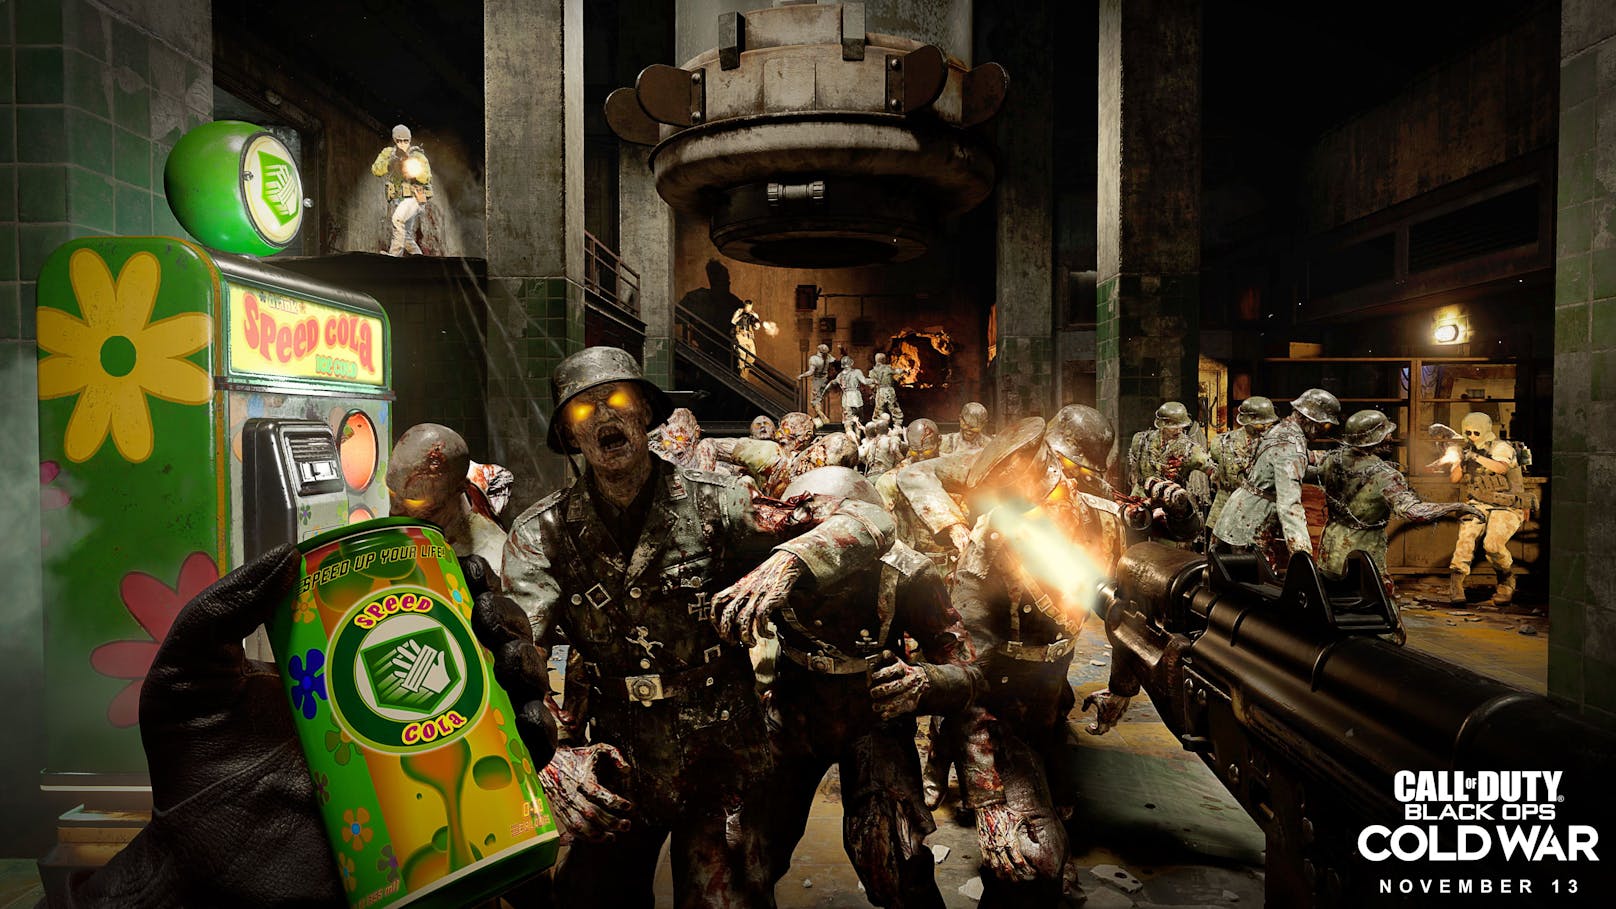 In das Spiel verpackt haben die Entwickler auch wieder einen Zombie-Modus. In diesem geht es härter und schneller zur Sache als in jedem anderen "Call of Duty" bisher.